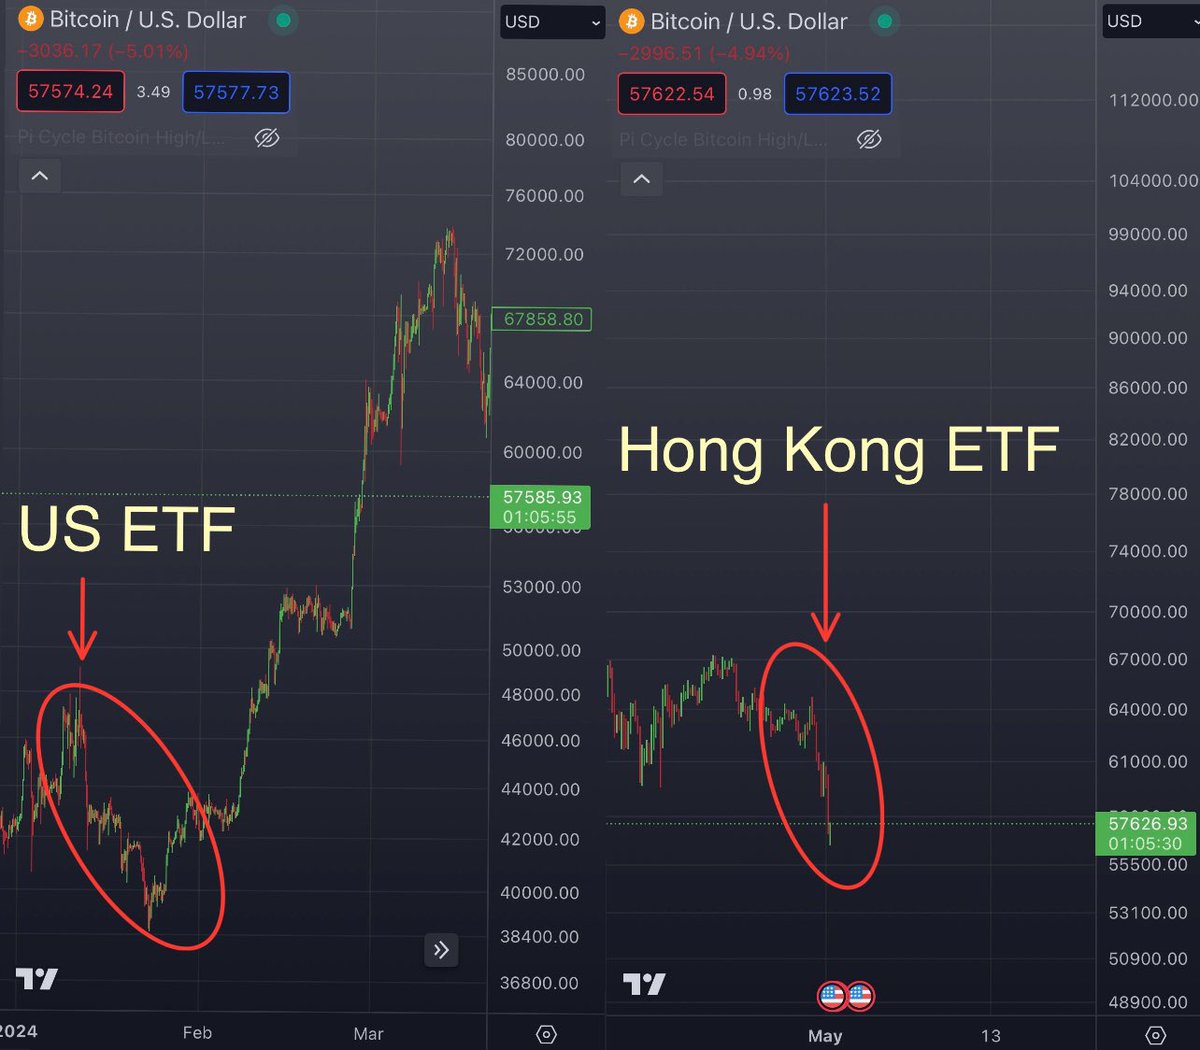 Tarih tekerrür edecek mi?

ABD’de ETF’ler onaylandıktan sonra #BTC çok kısa bir süre içerisinde %10 düşüp ardından ralli yapmıştı.

Geçtiğimiz pazar gününde de Hong Kong’da ETF’ler işleme başladıktan sonra %10 düştü.